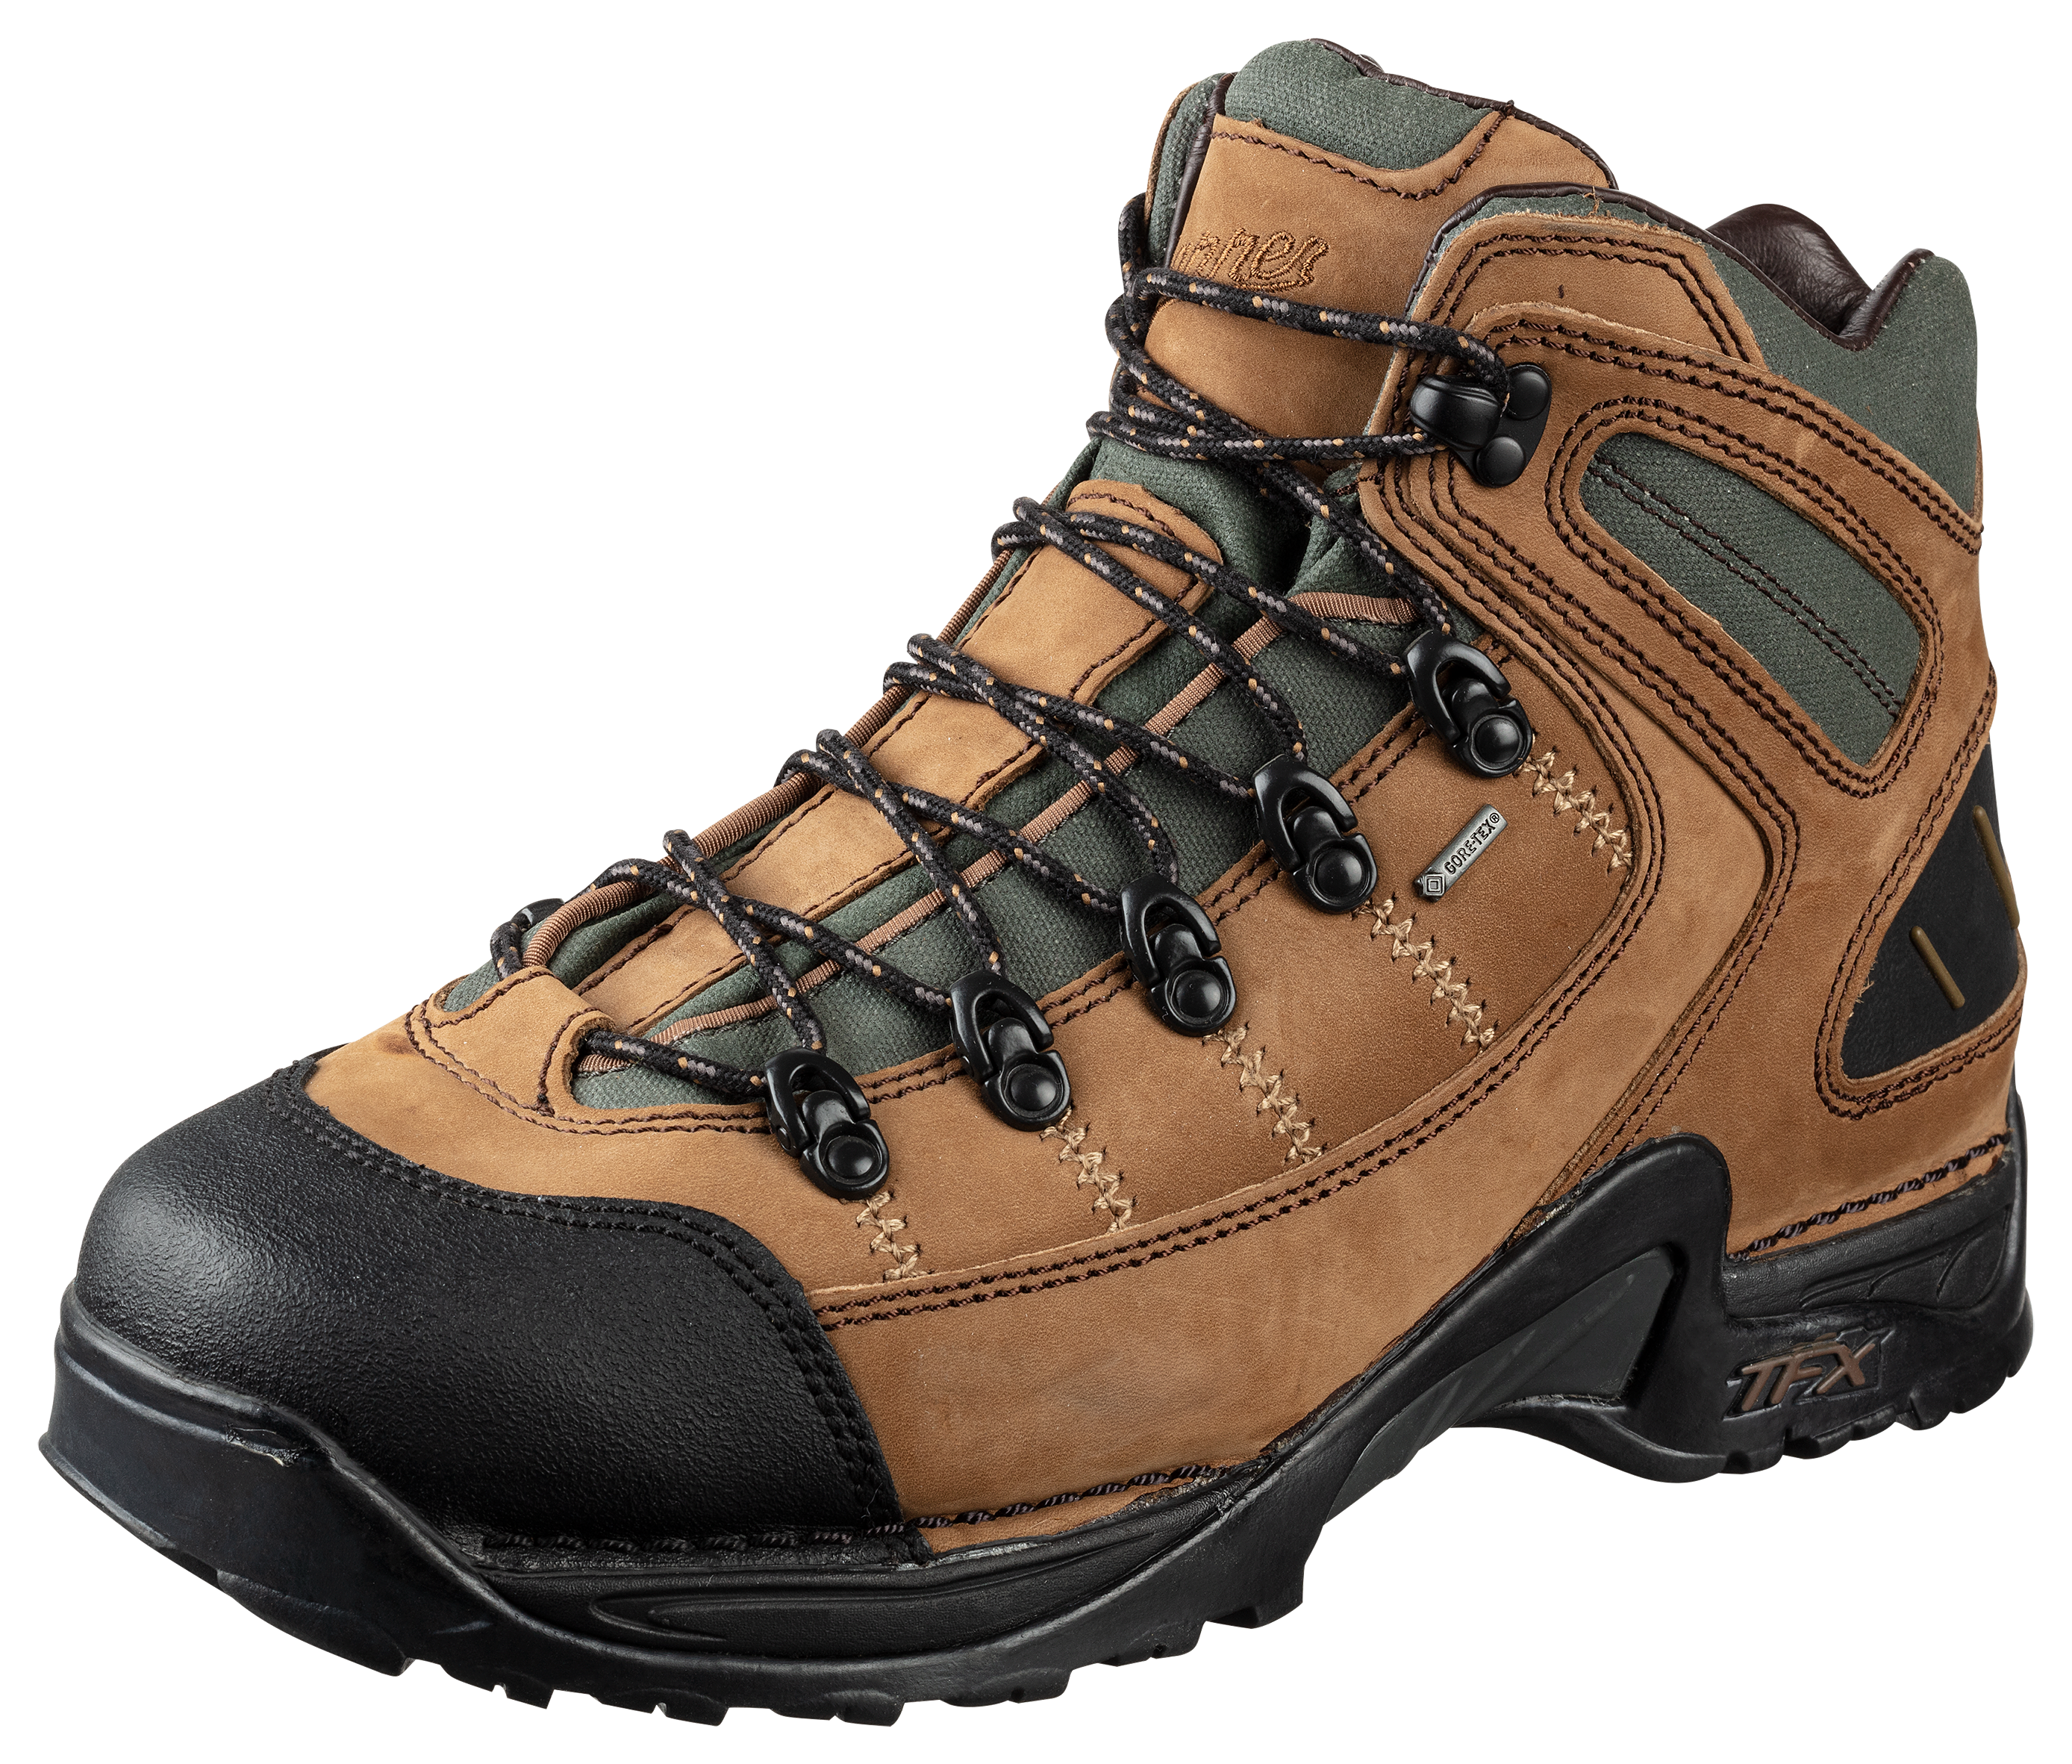 Danner 453 GORE-TEX Waterproof Hiking Boots for Men - Dark Tan - 11.5M